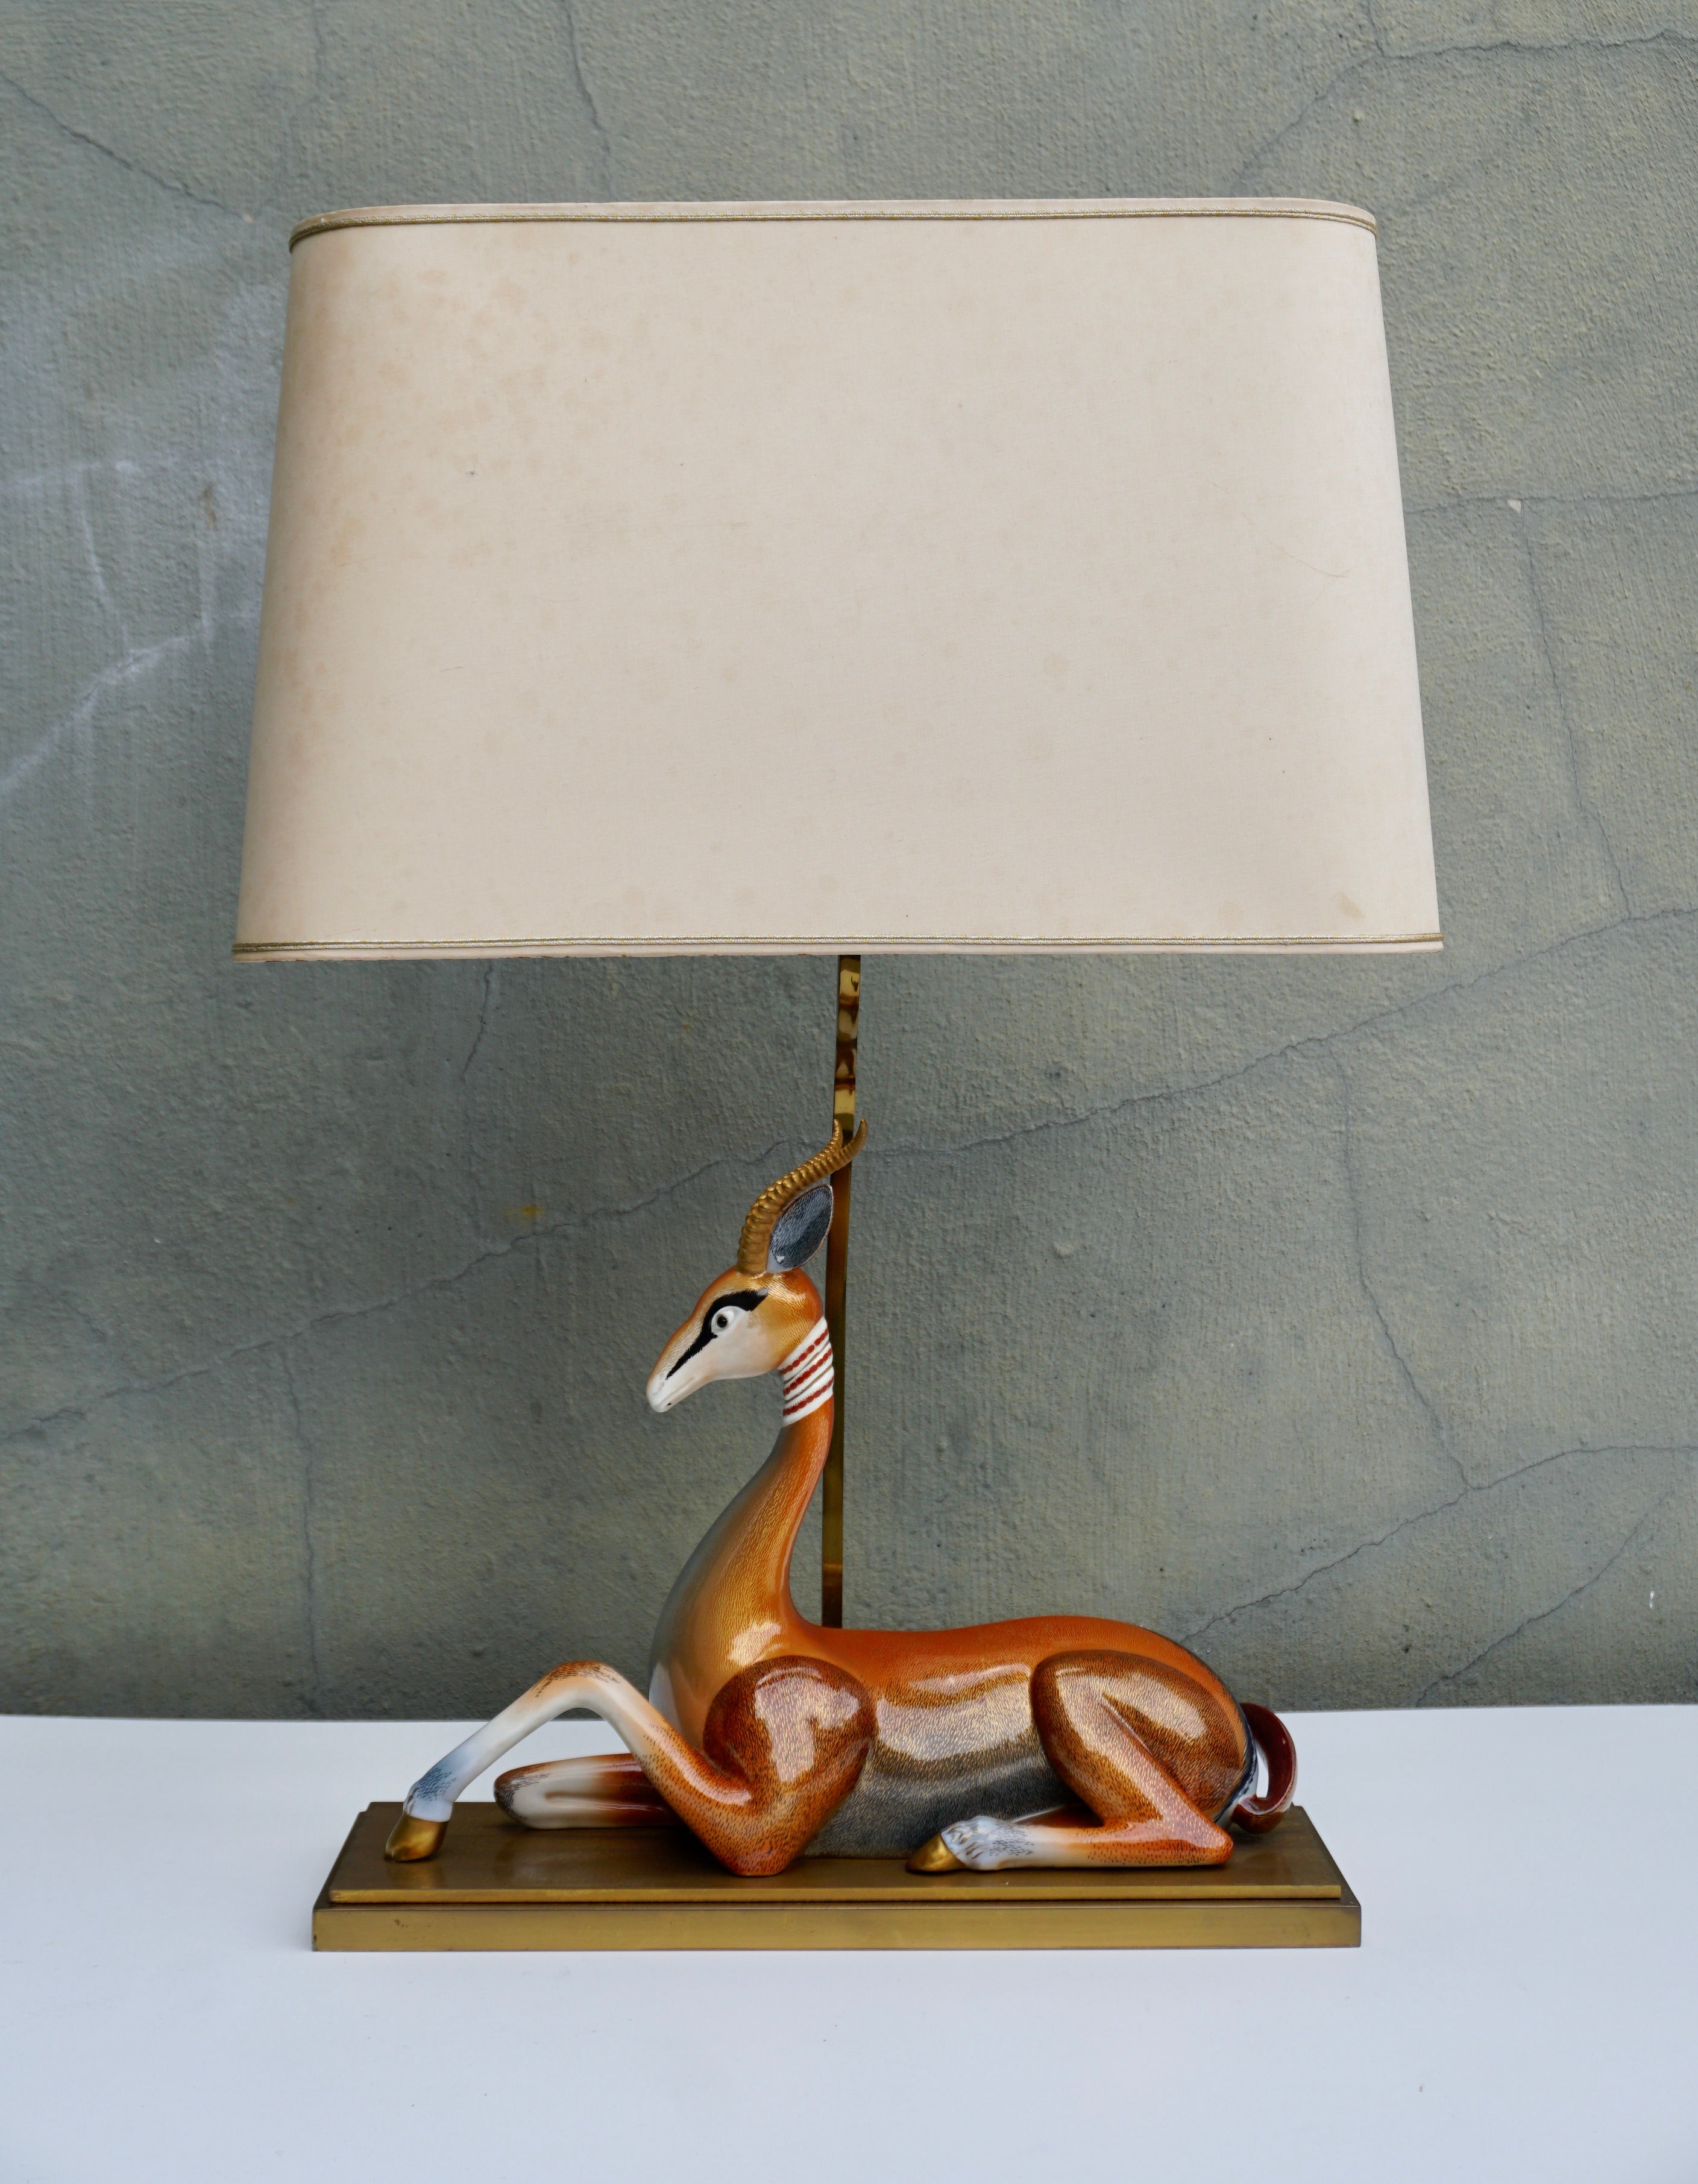 Antilope (Hippotragus niger) assise en porcelaine comme lampe. Fidèlement reproduit avec de belles variations de couleurs peintes.
Grande lampe de table en forme d'animal, de style moderne du milieu du siècle. Forme sculpturale en céramique